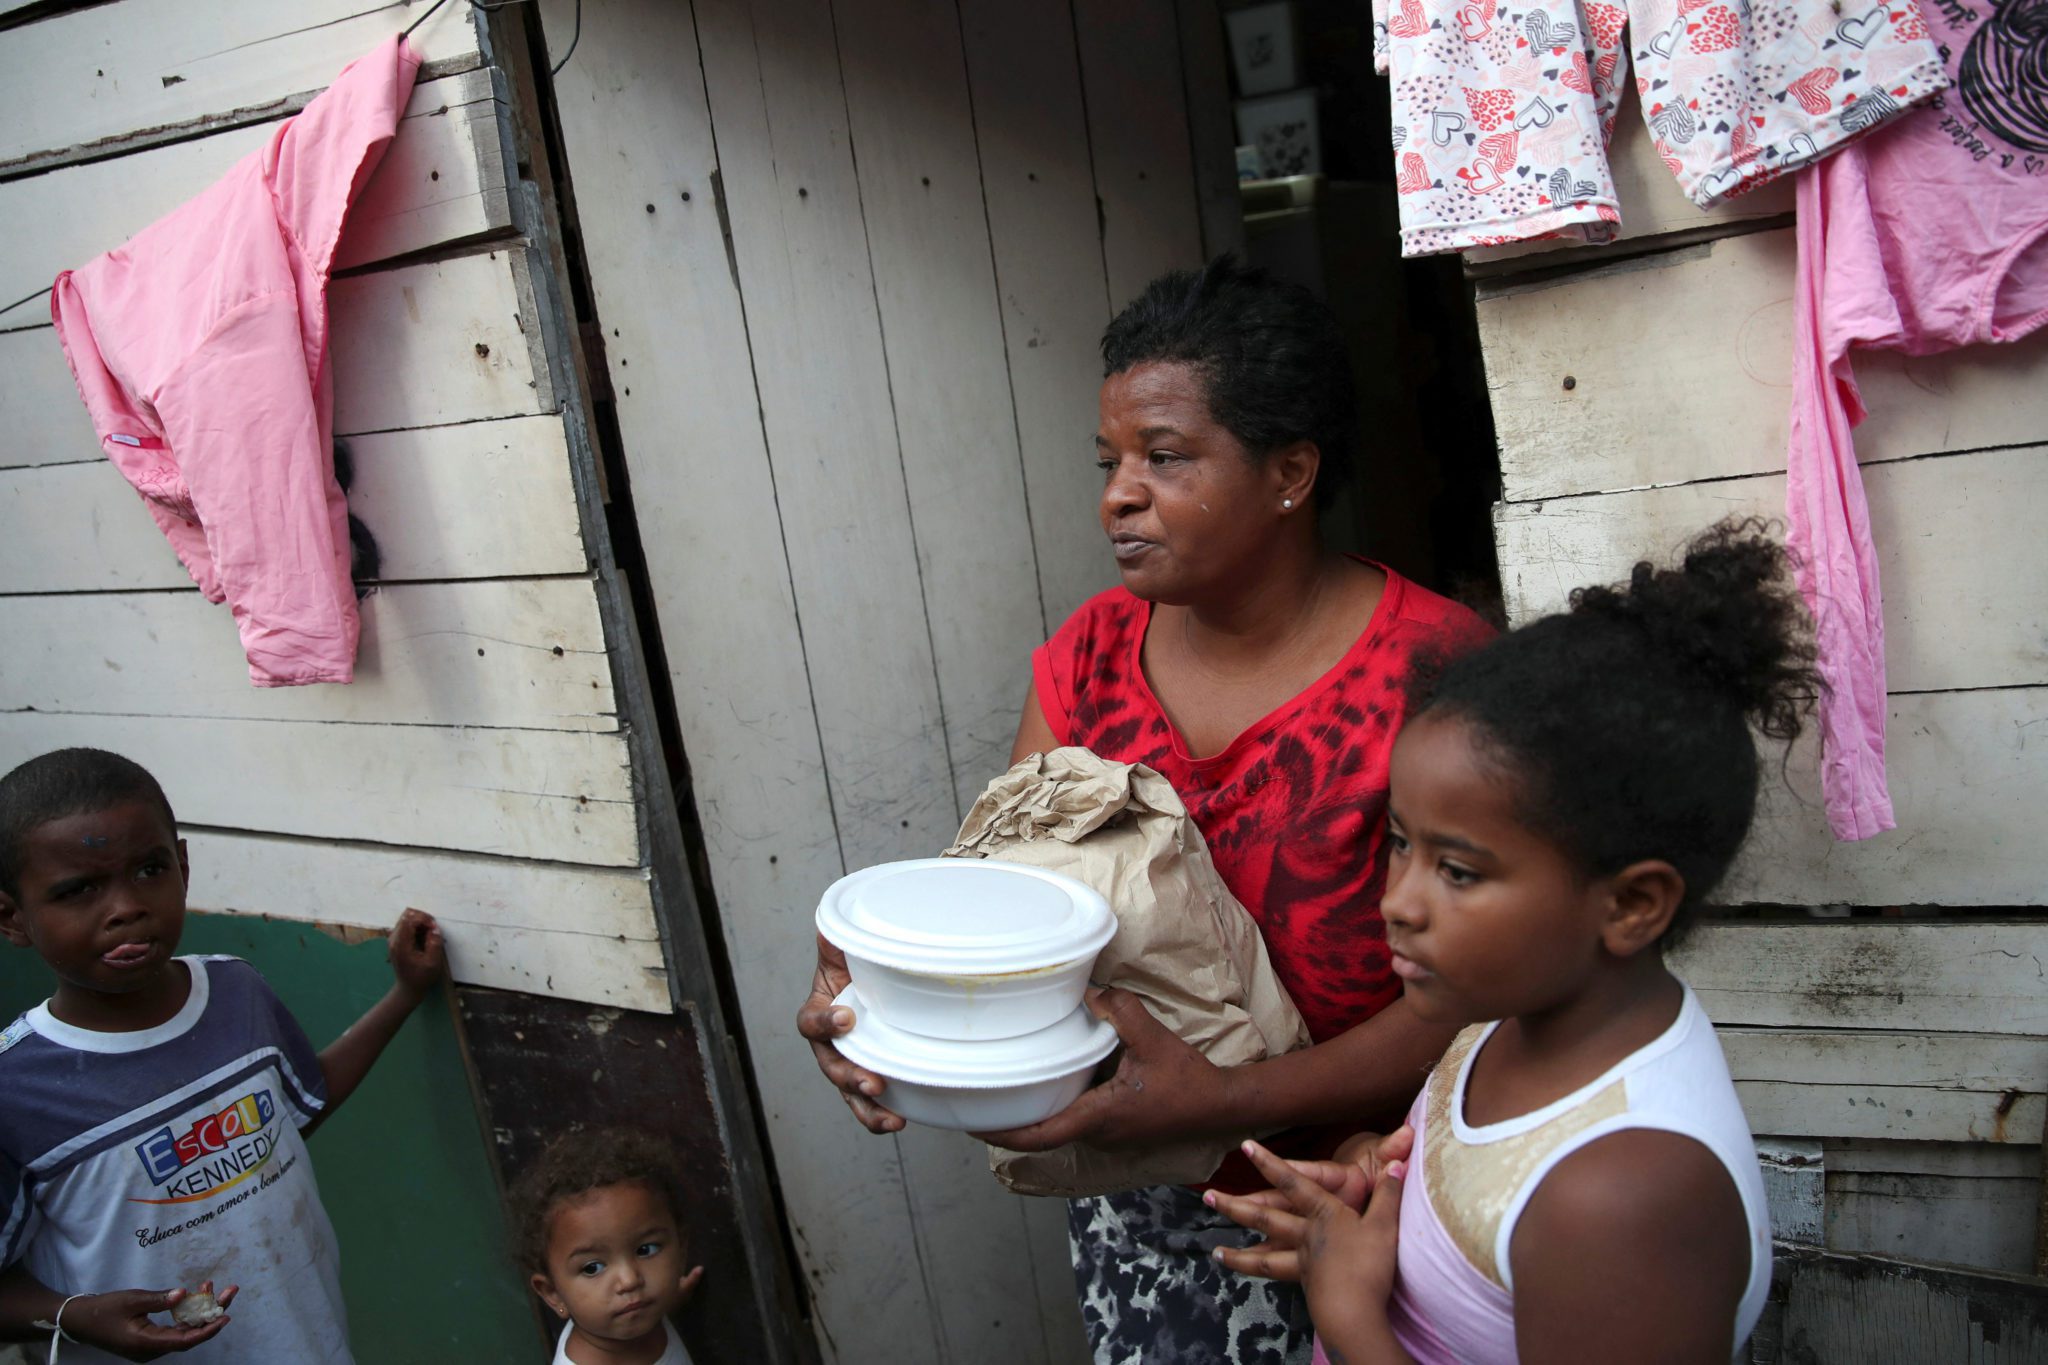 Voluntários de uma igreja distribuem comida em favela no Rio de Janeiro